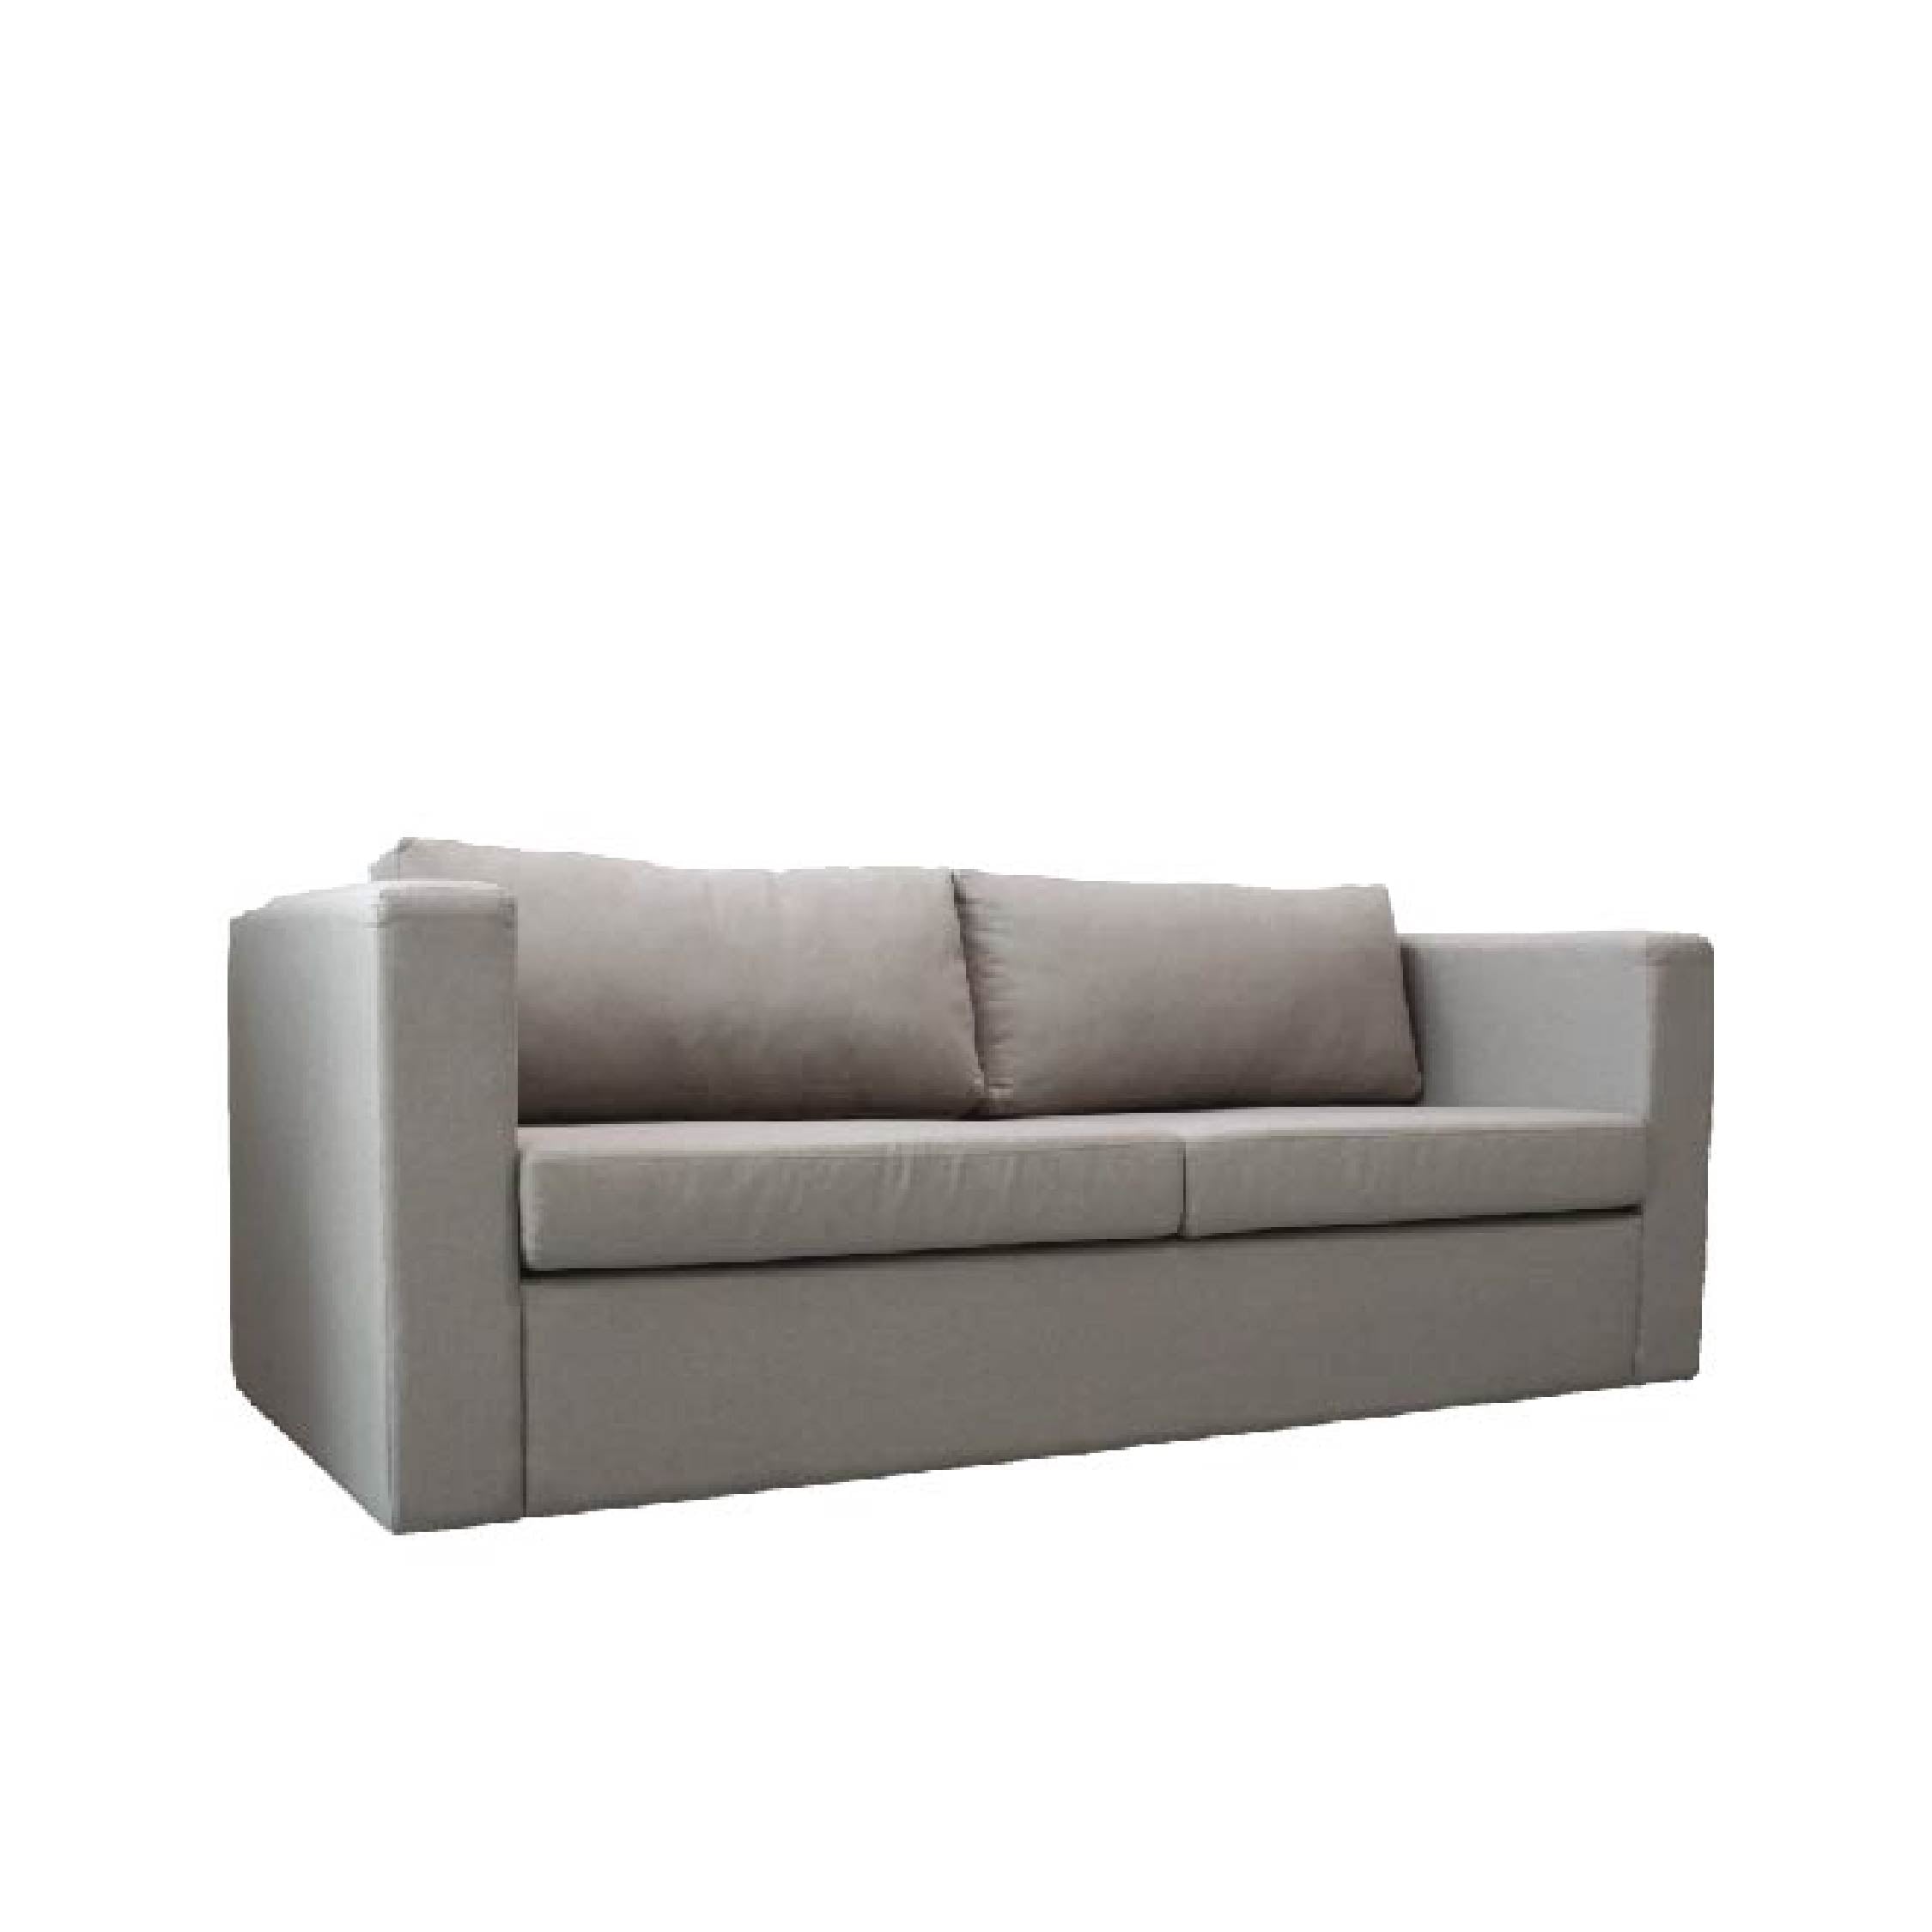 MINIMO Sofa 3 Seater in Light Grey Fabric